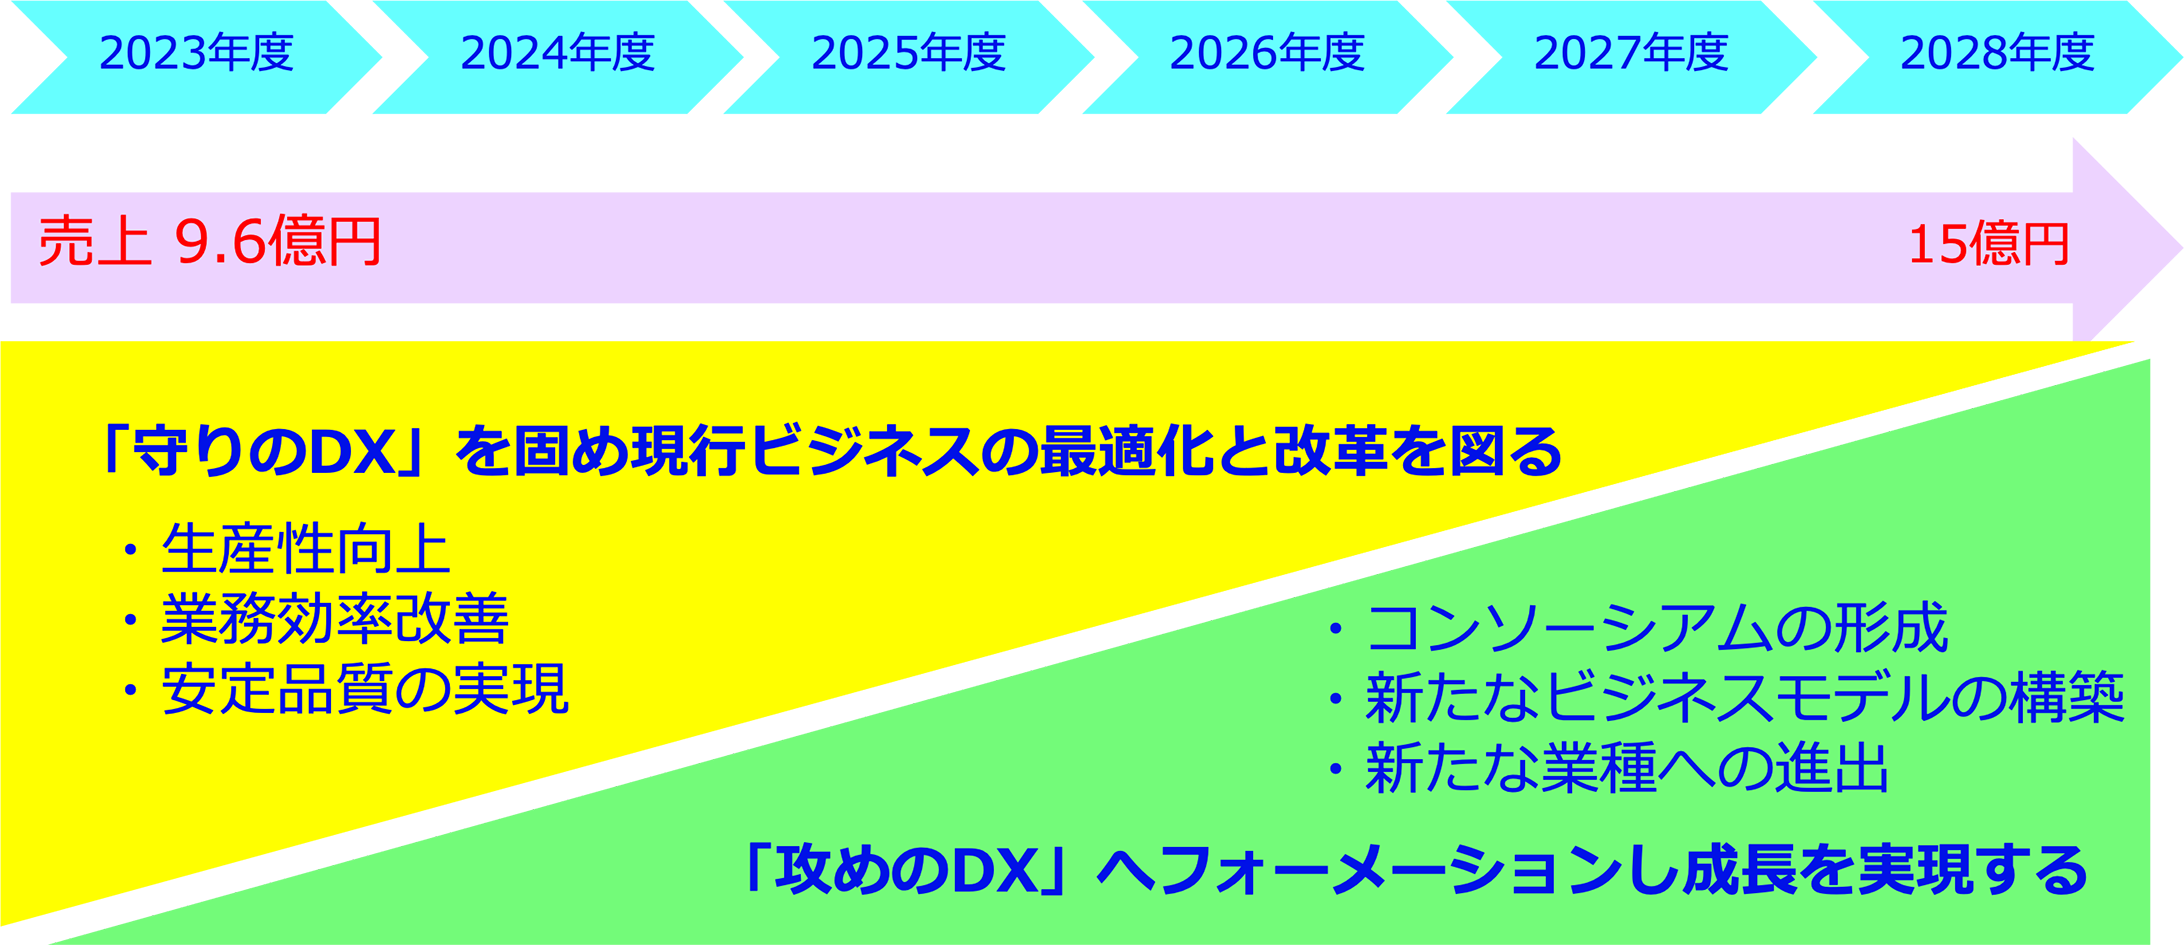 広島メタルワークDXロードマップ